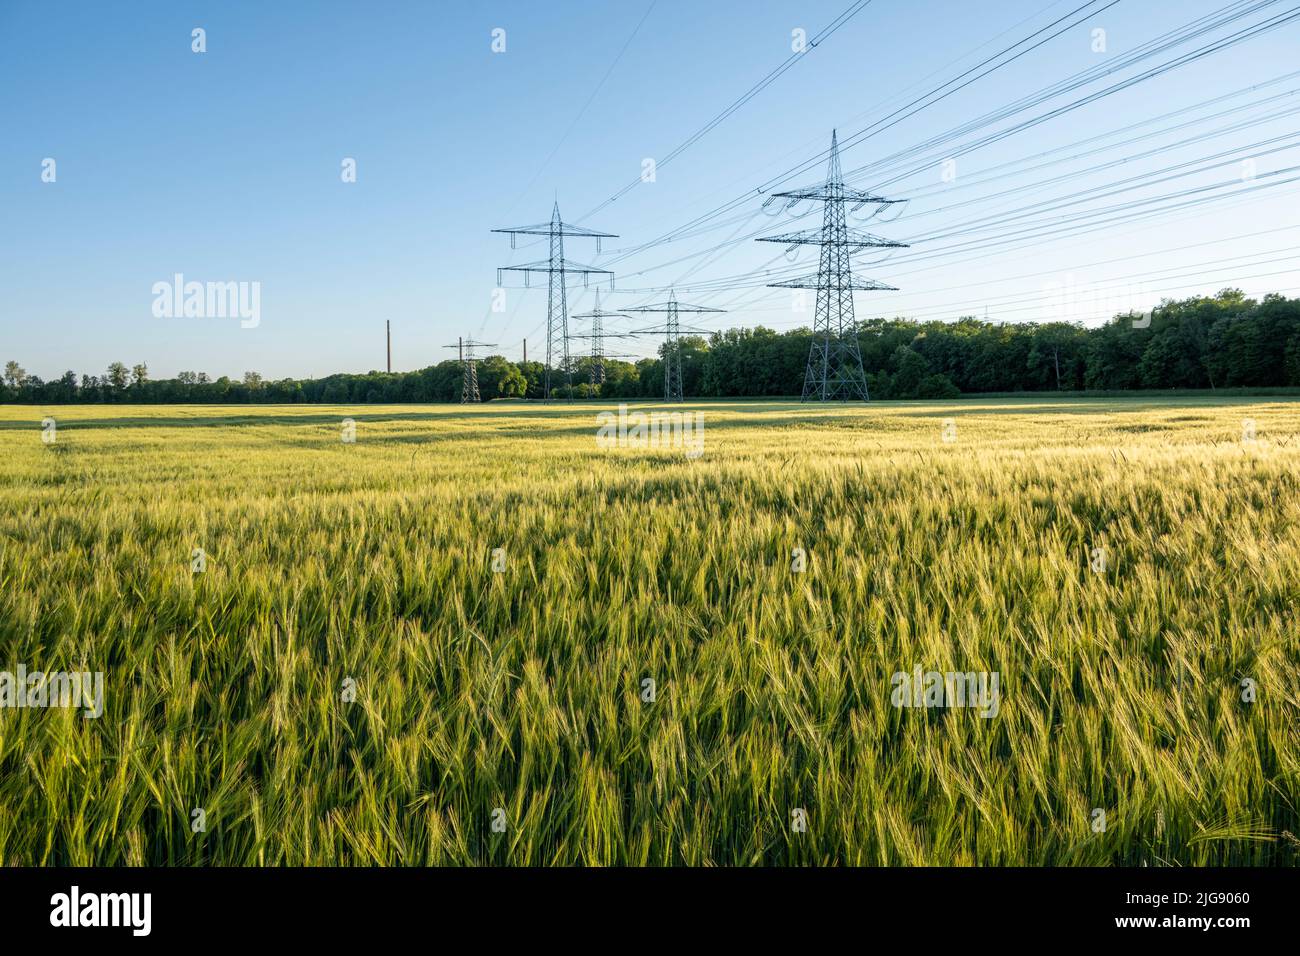 Germany, Baden-Württemberg, Karlsruhe, overhead power lines in a grain field. Stock Photo